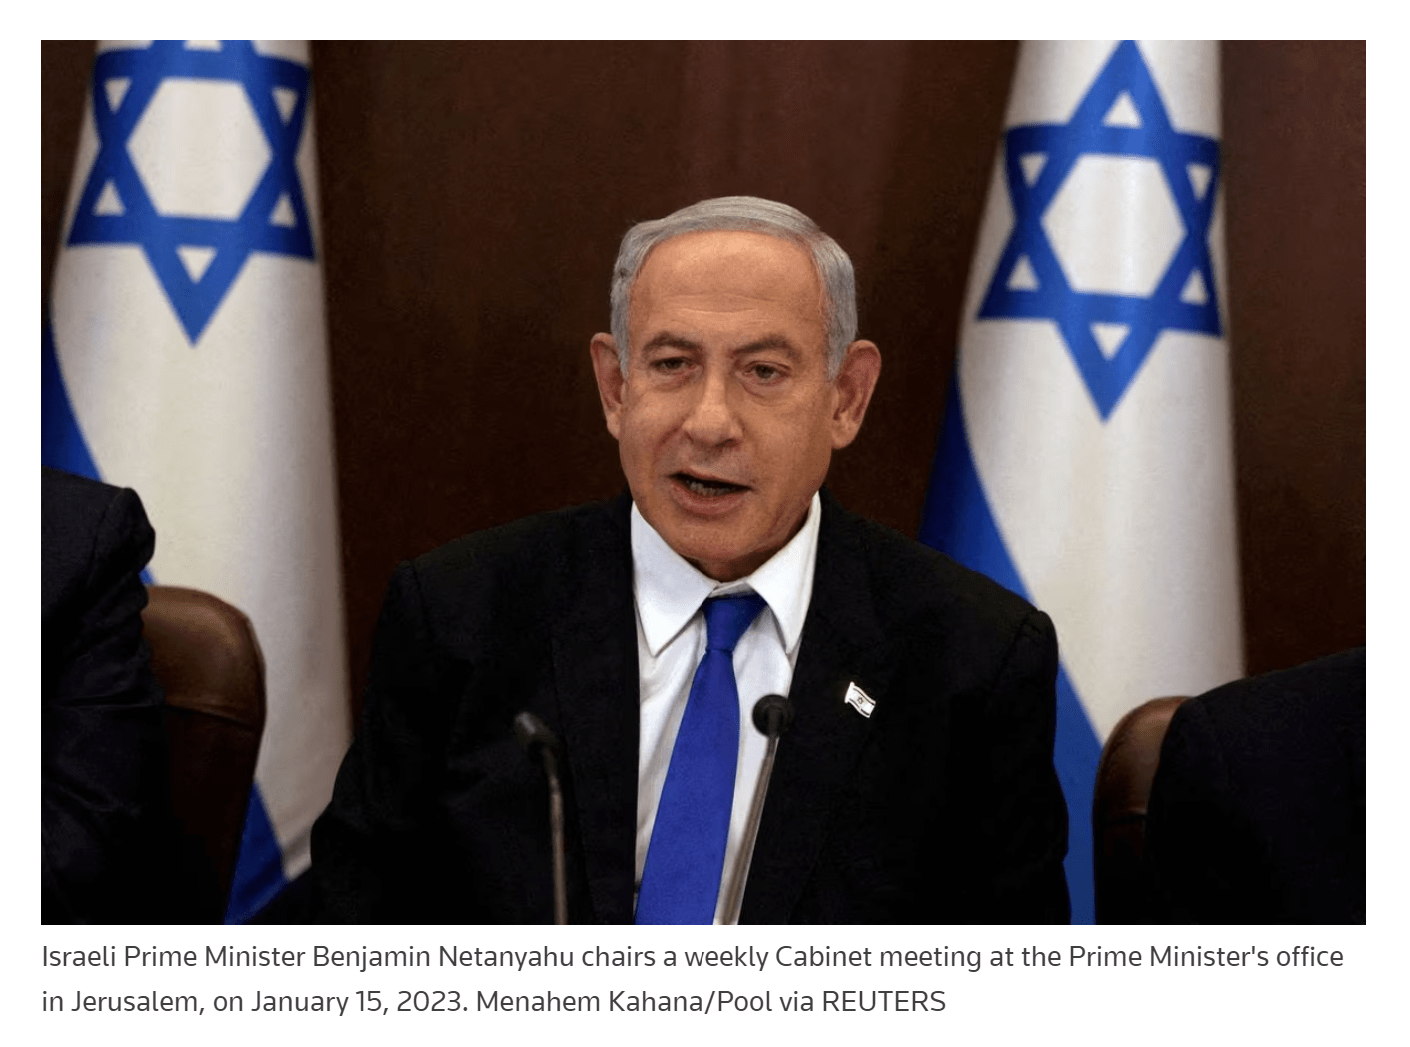 بنیامین نتانیاهو نخست وزیر اسرائیل، ایران را مسئول حمله به نفتکش می داند